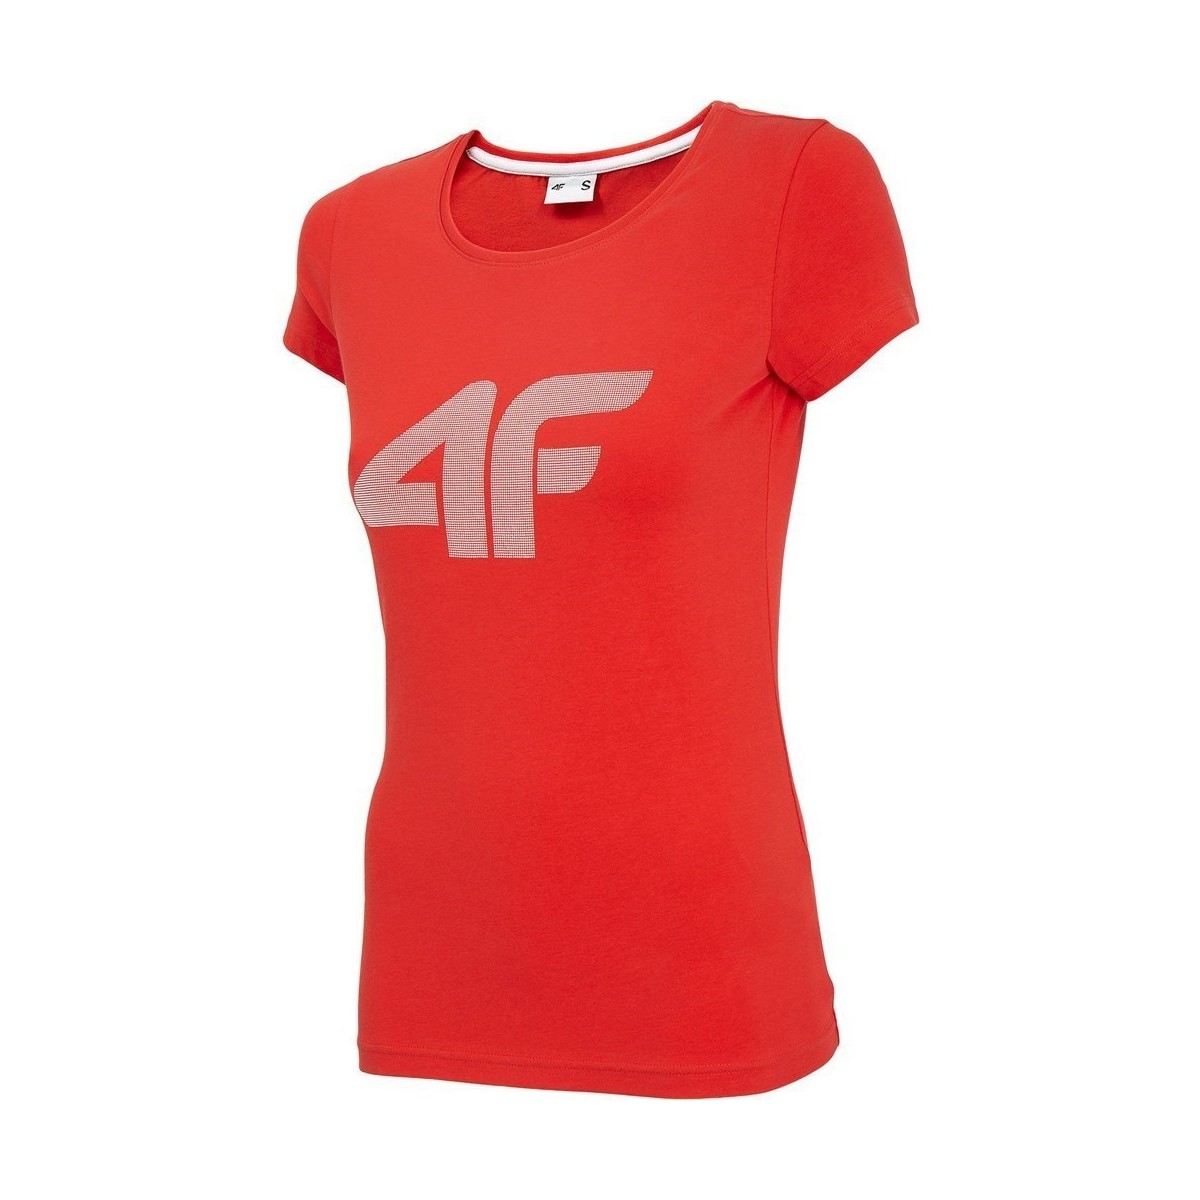 Îmbracaminte Femei Tricouri mânecă scurtă 4F TSD005 roșu